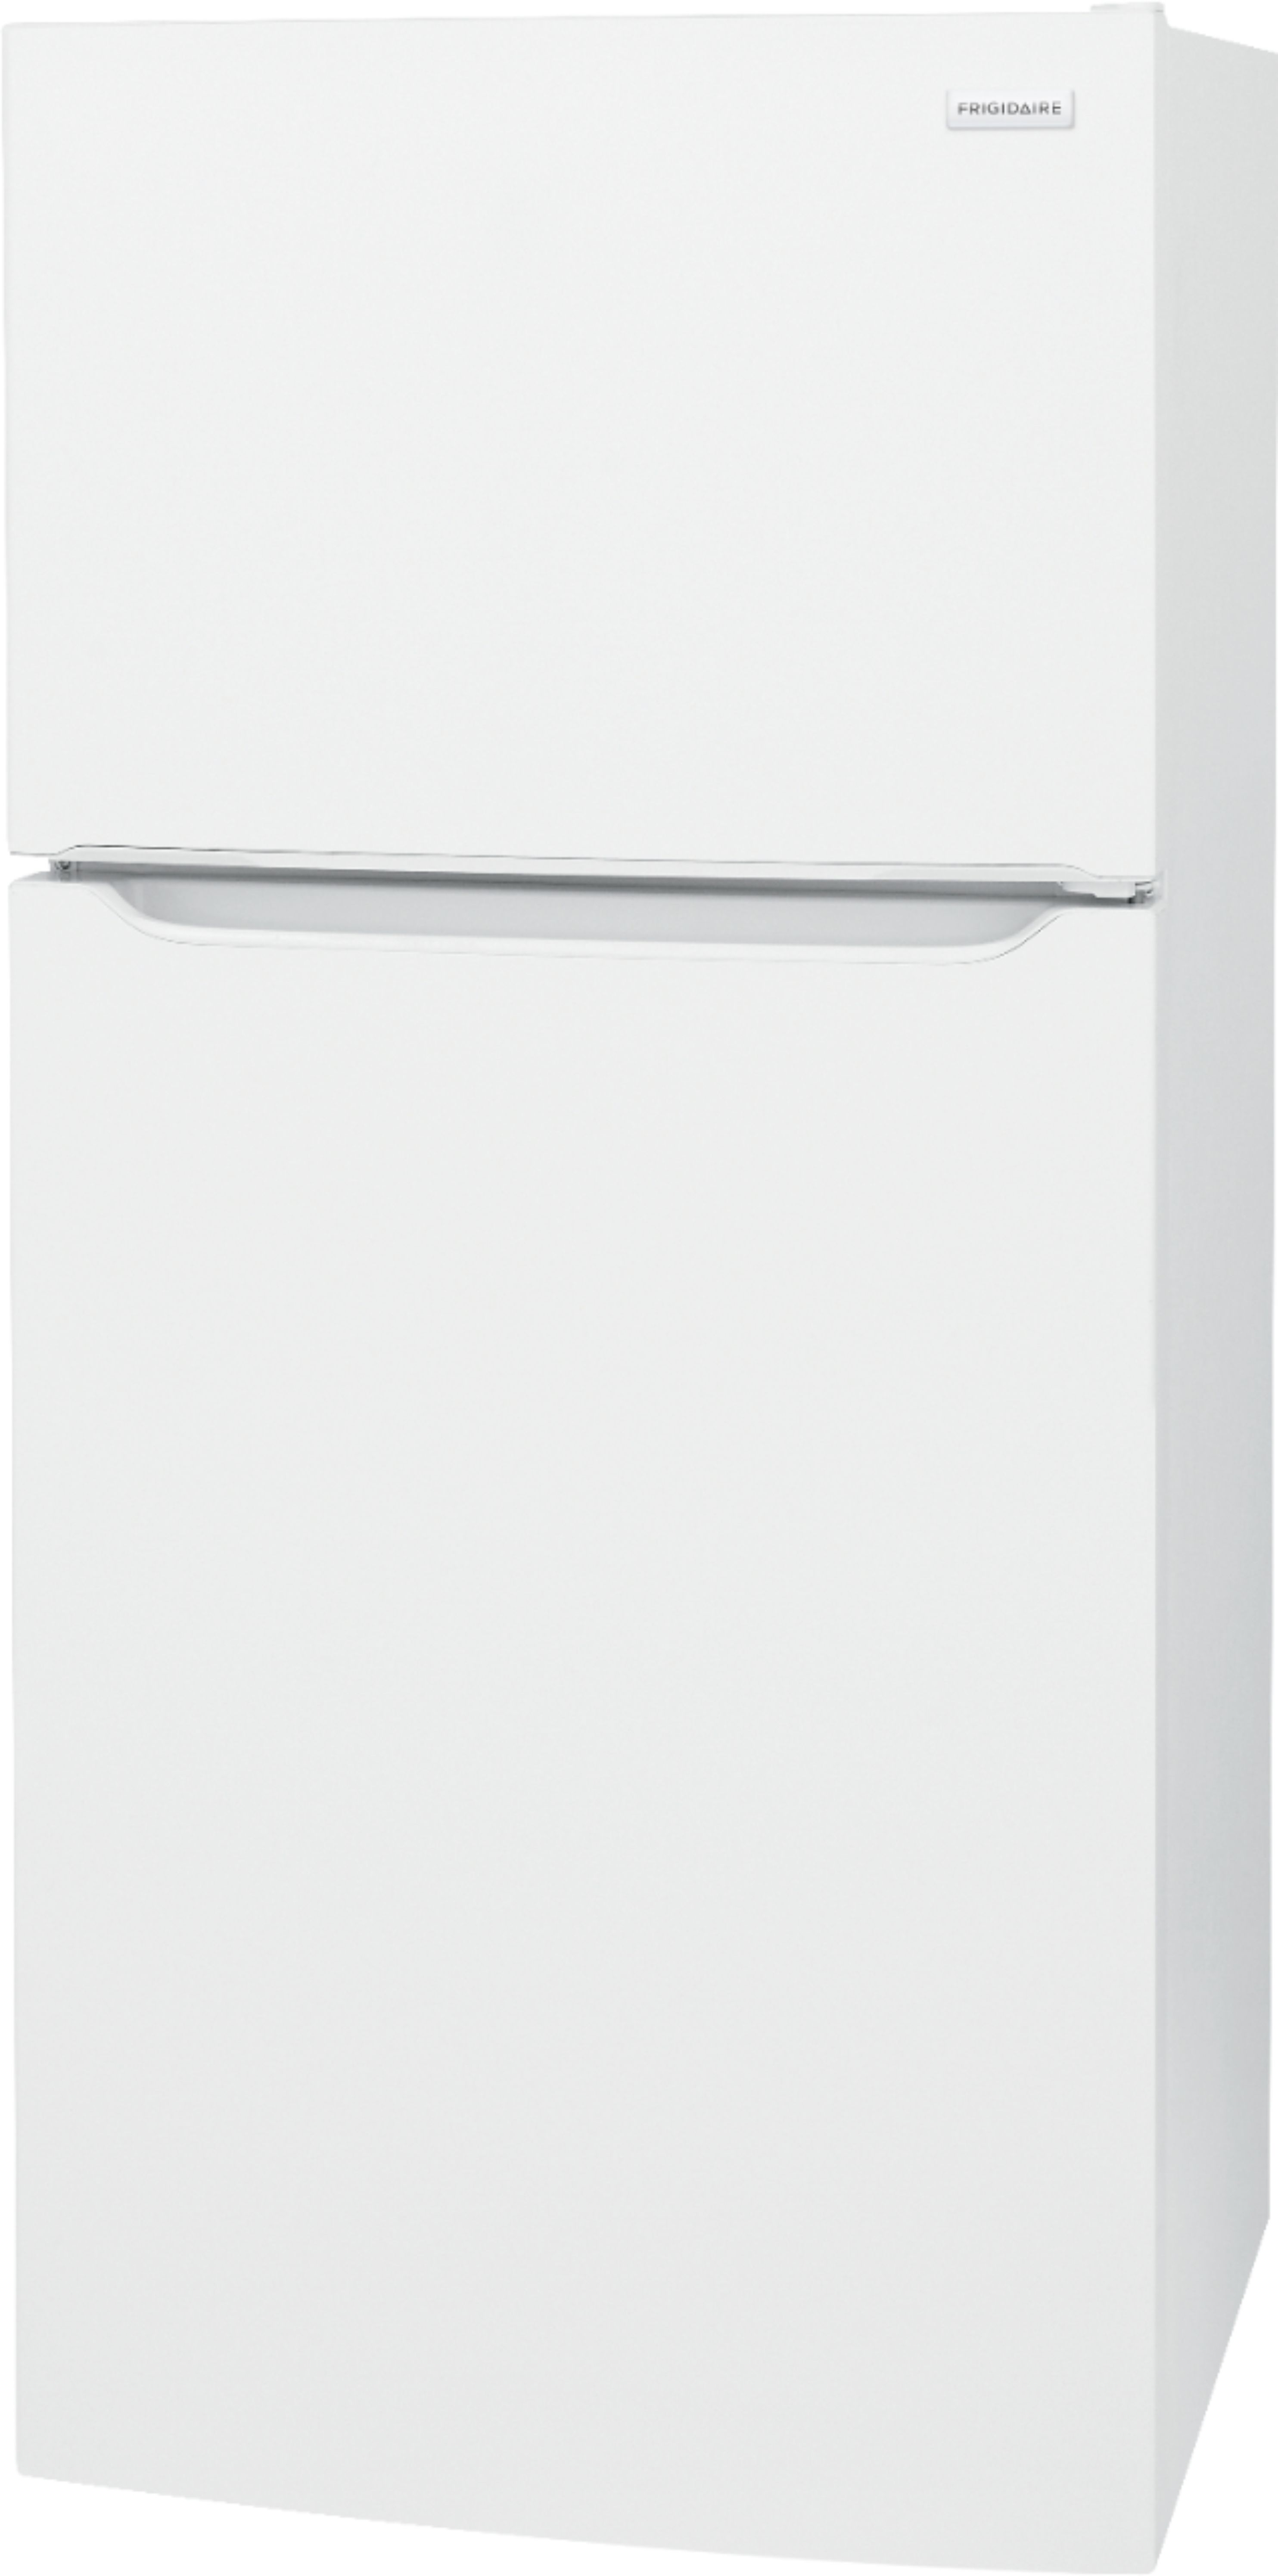 Left View: Frigidaire - 18.3 Cu. Ft. Top-Freezer Refrigerator - White